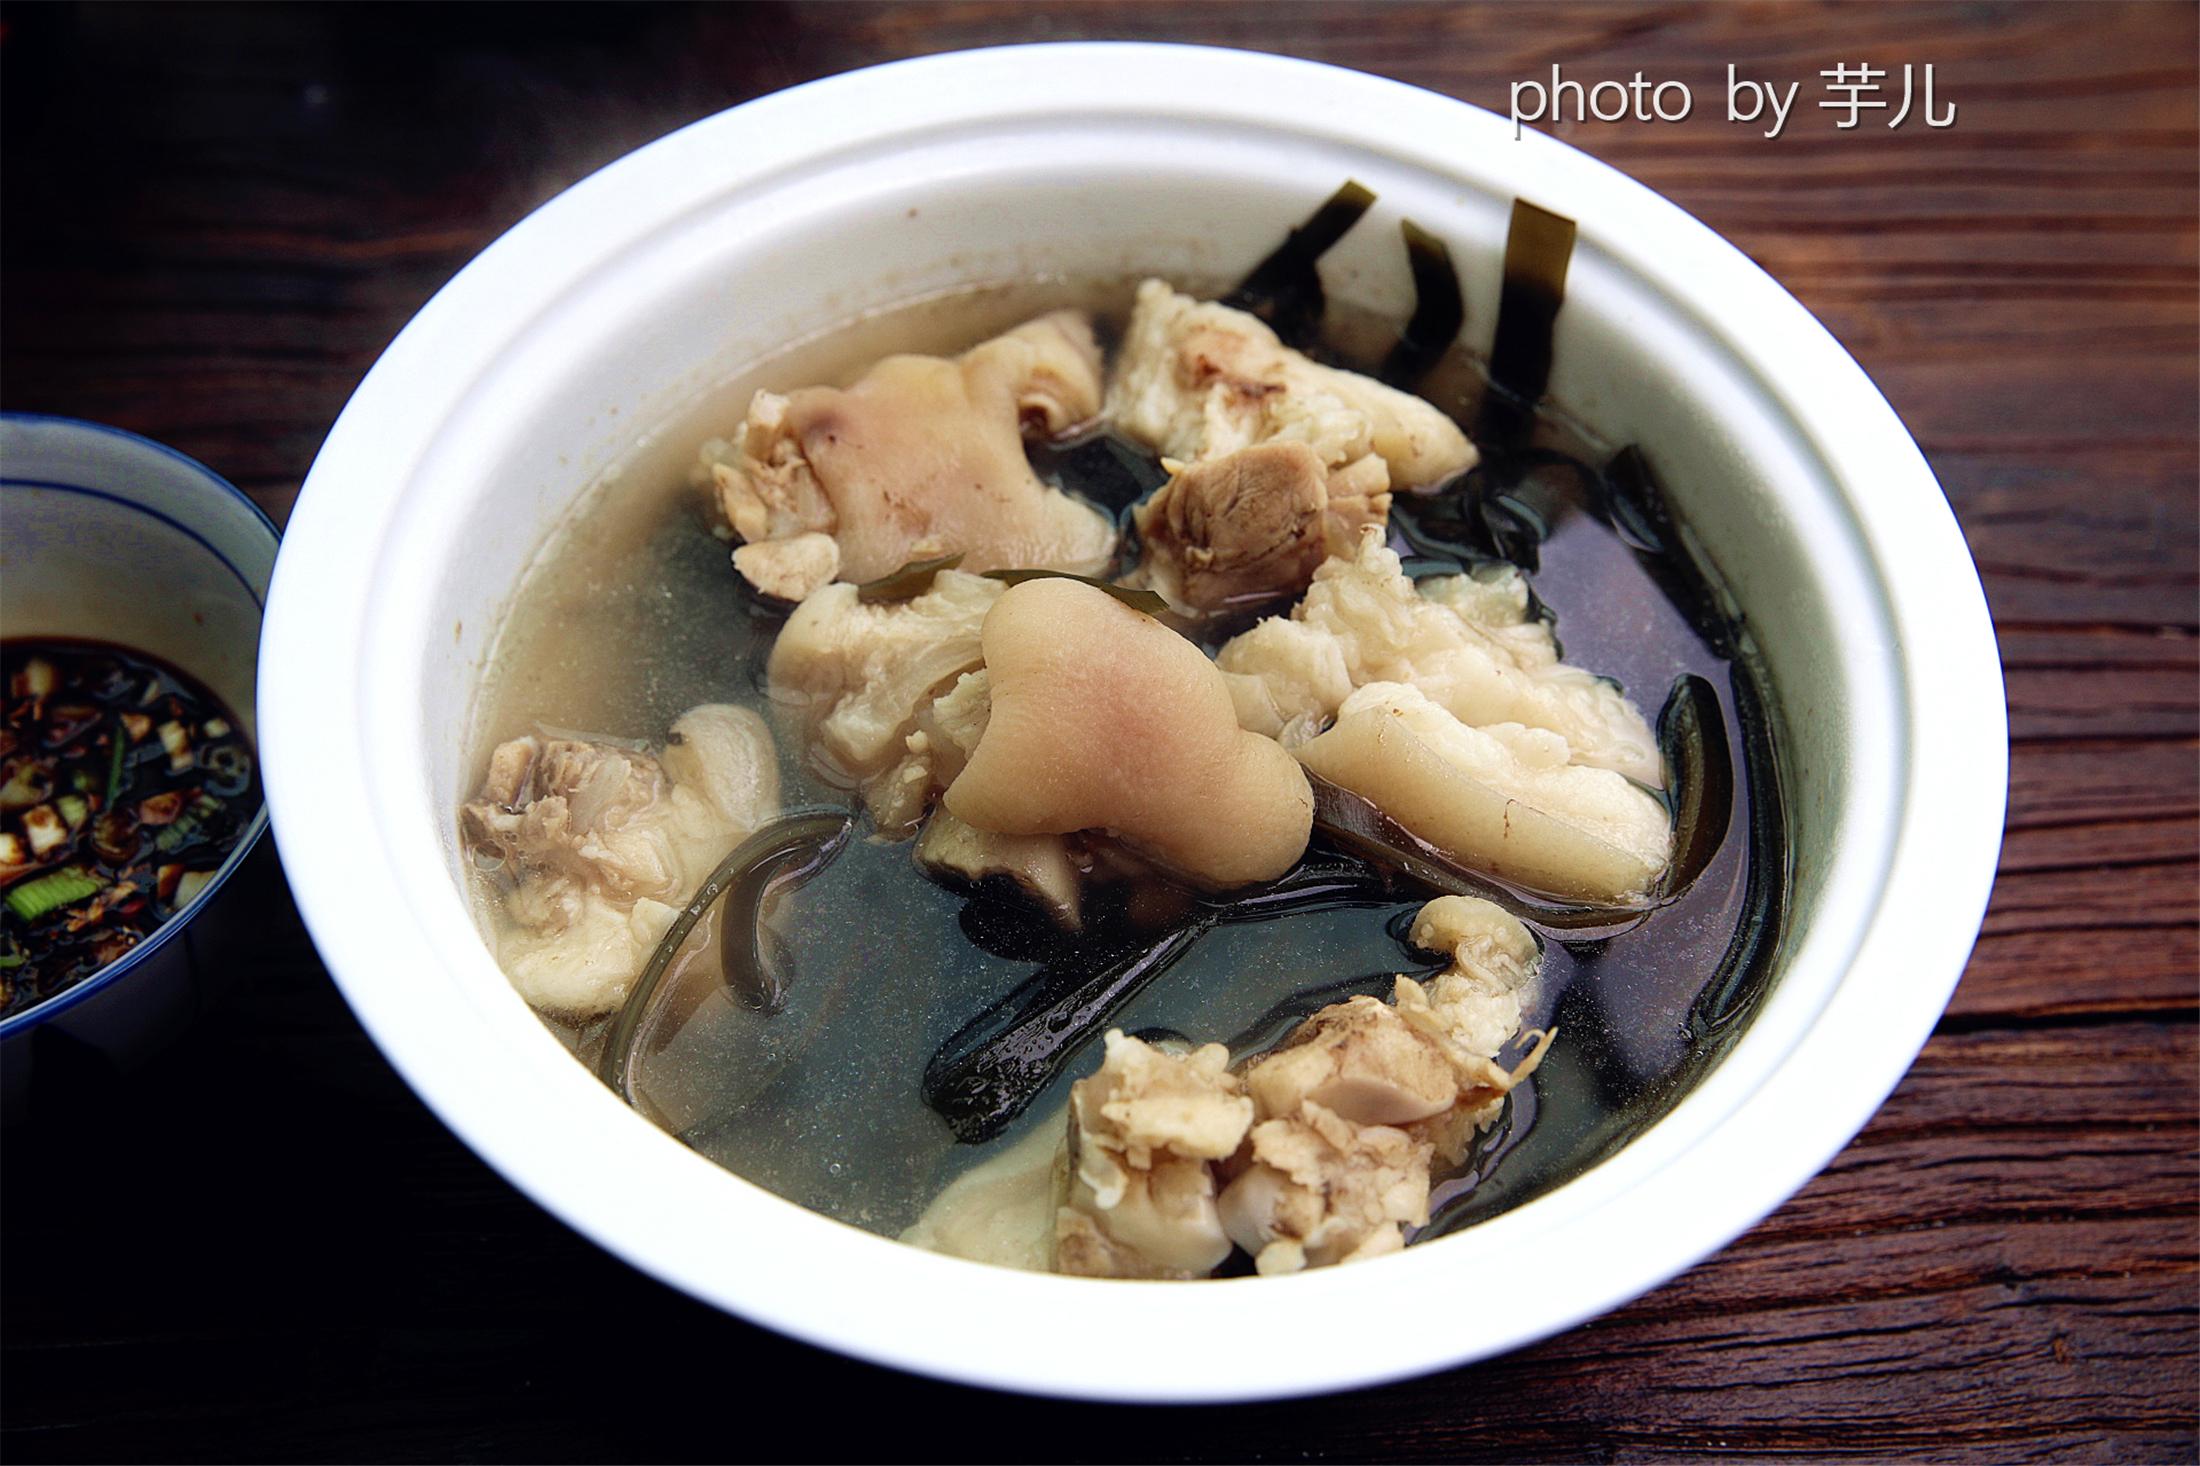 【海带猪蹄汤】海带猪蹄汤是一种非常健康的美食,特别是猪脚,它其实